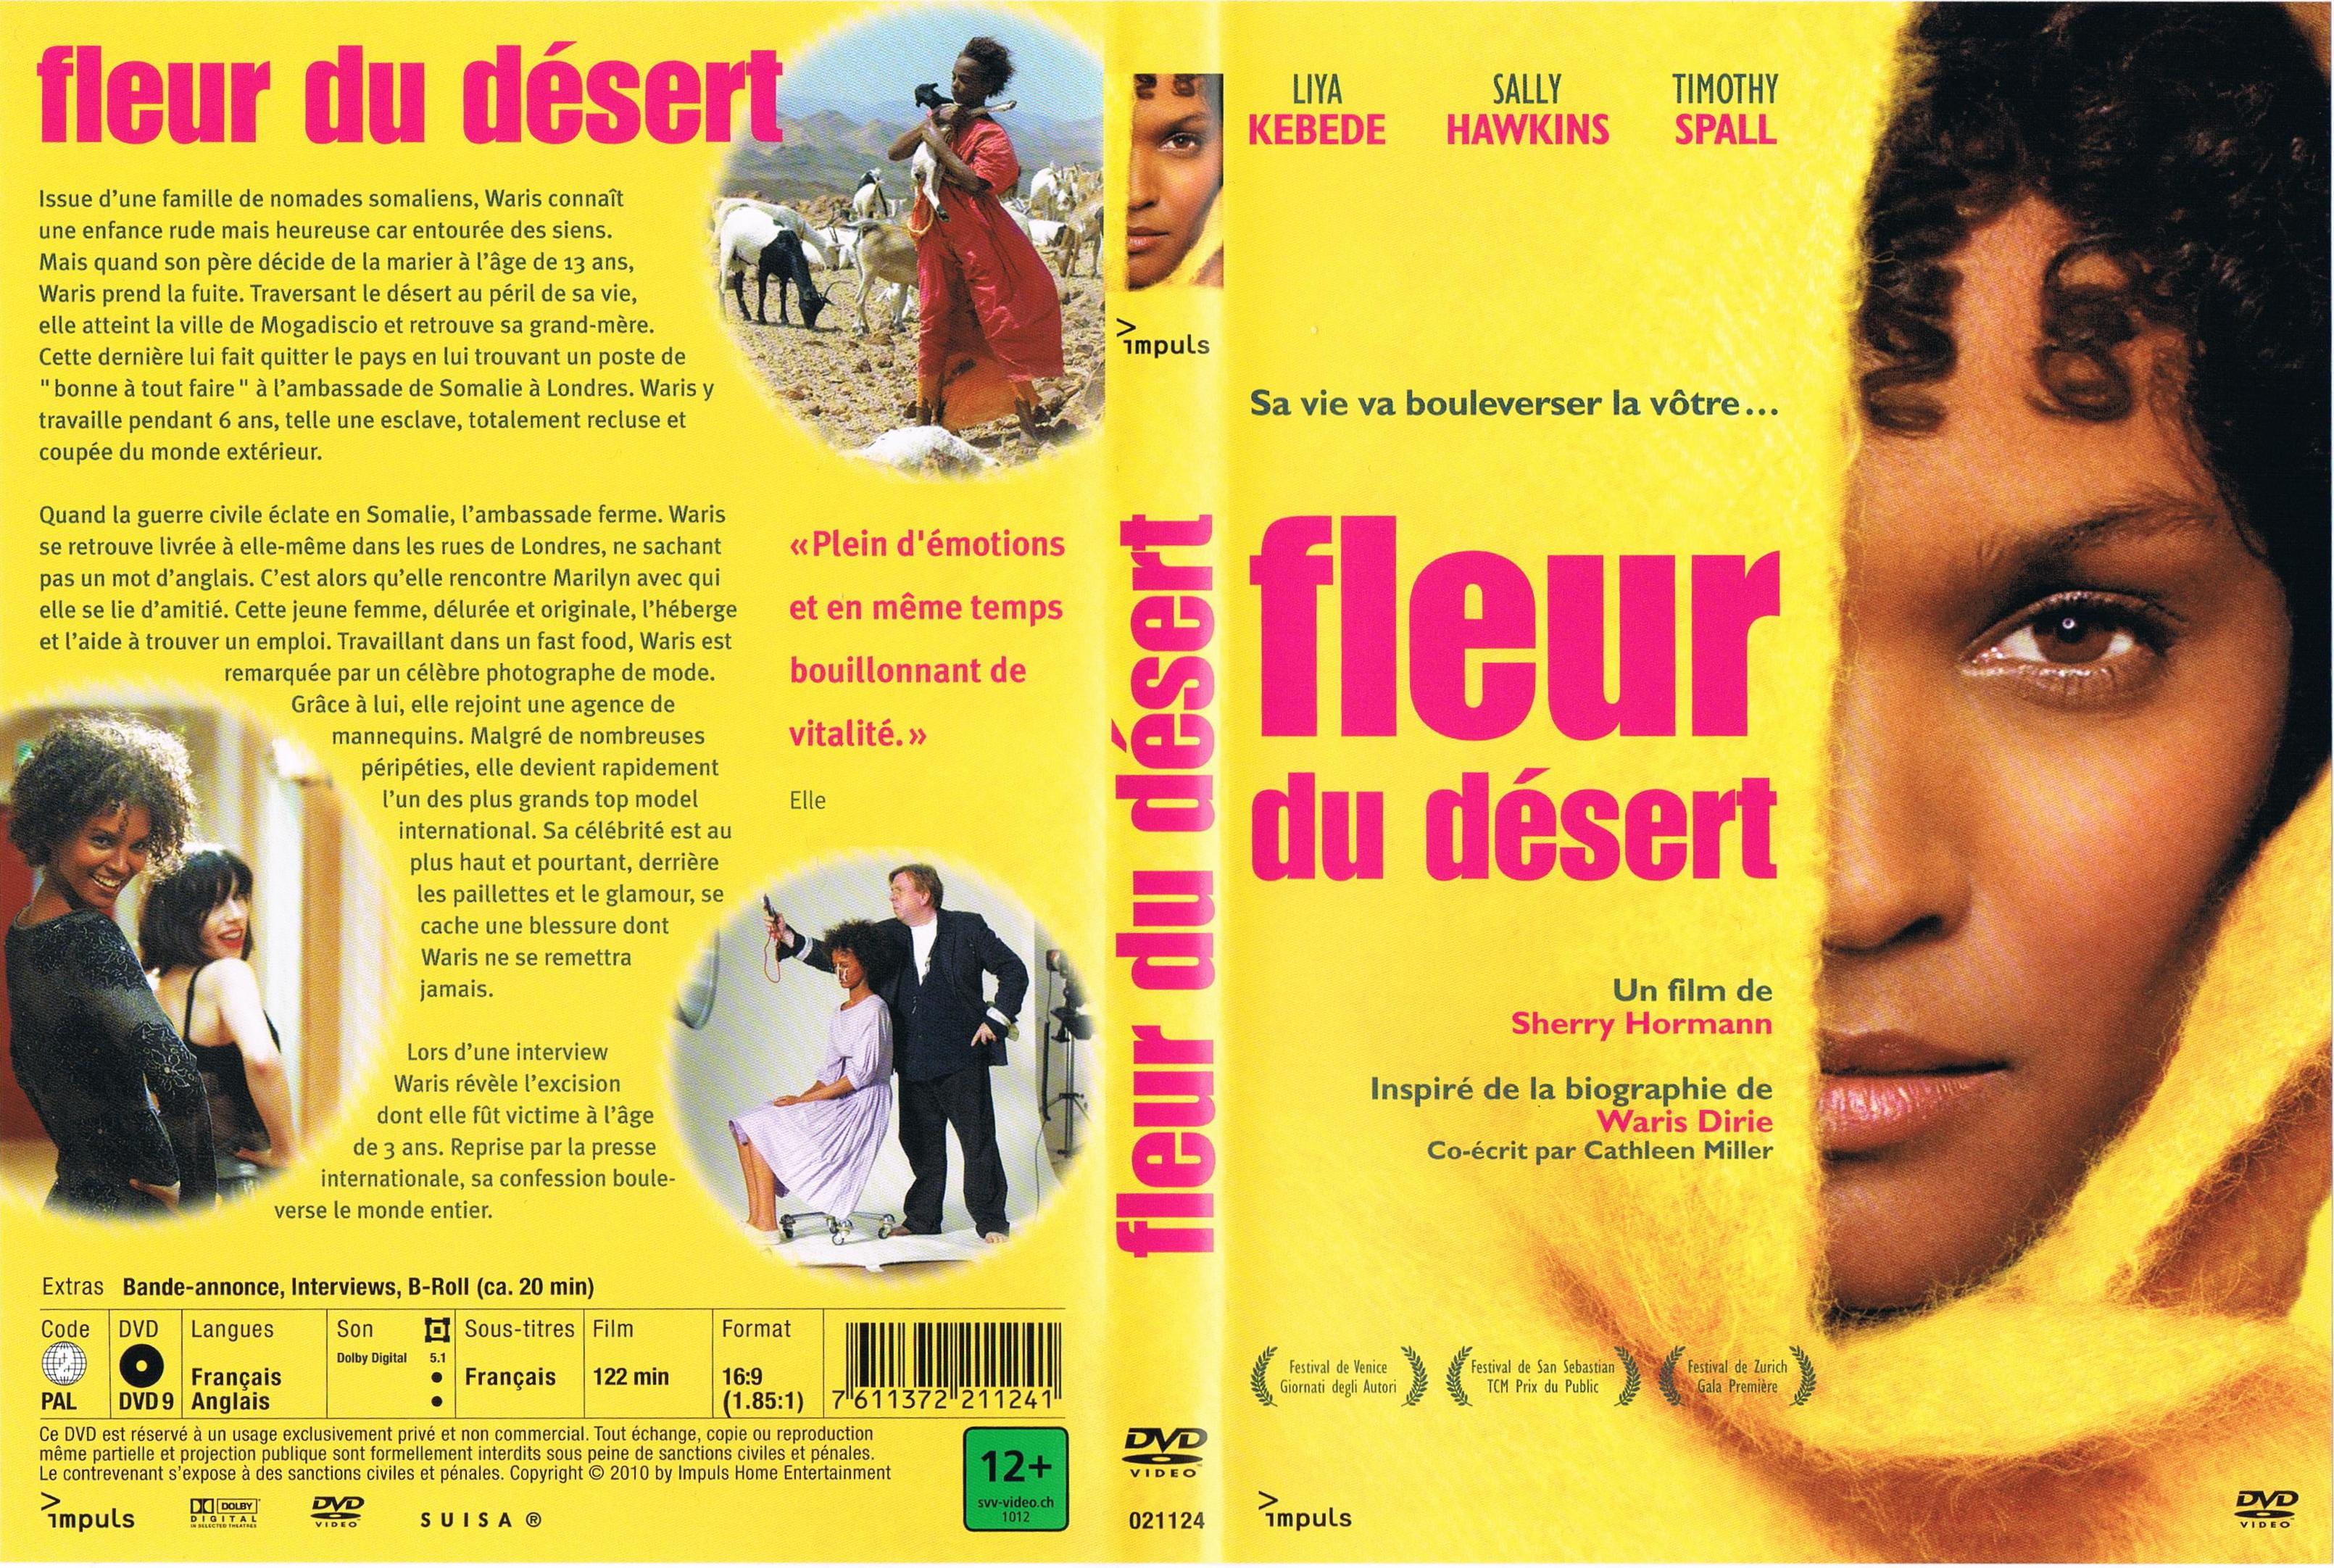 Jaquette DVD Fleur du dsert v3